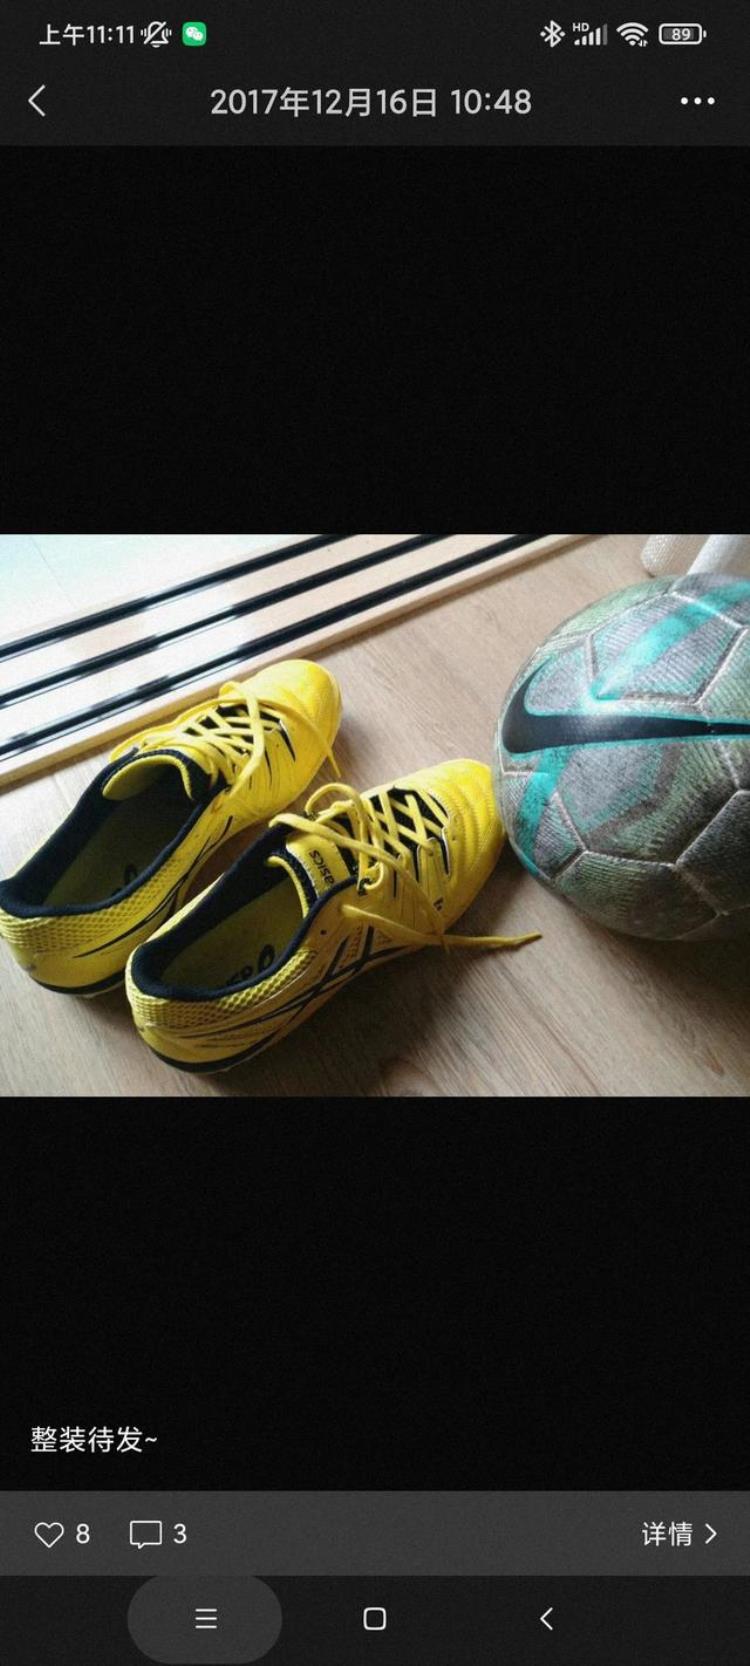 我的球鞋之AsicsDestaque6TF花式足球练习用鞋